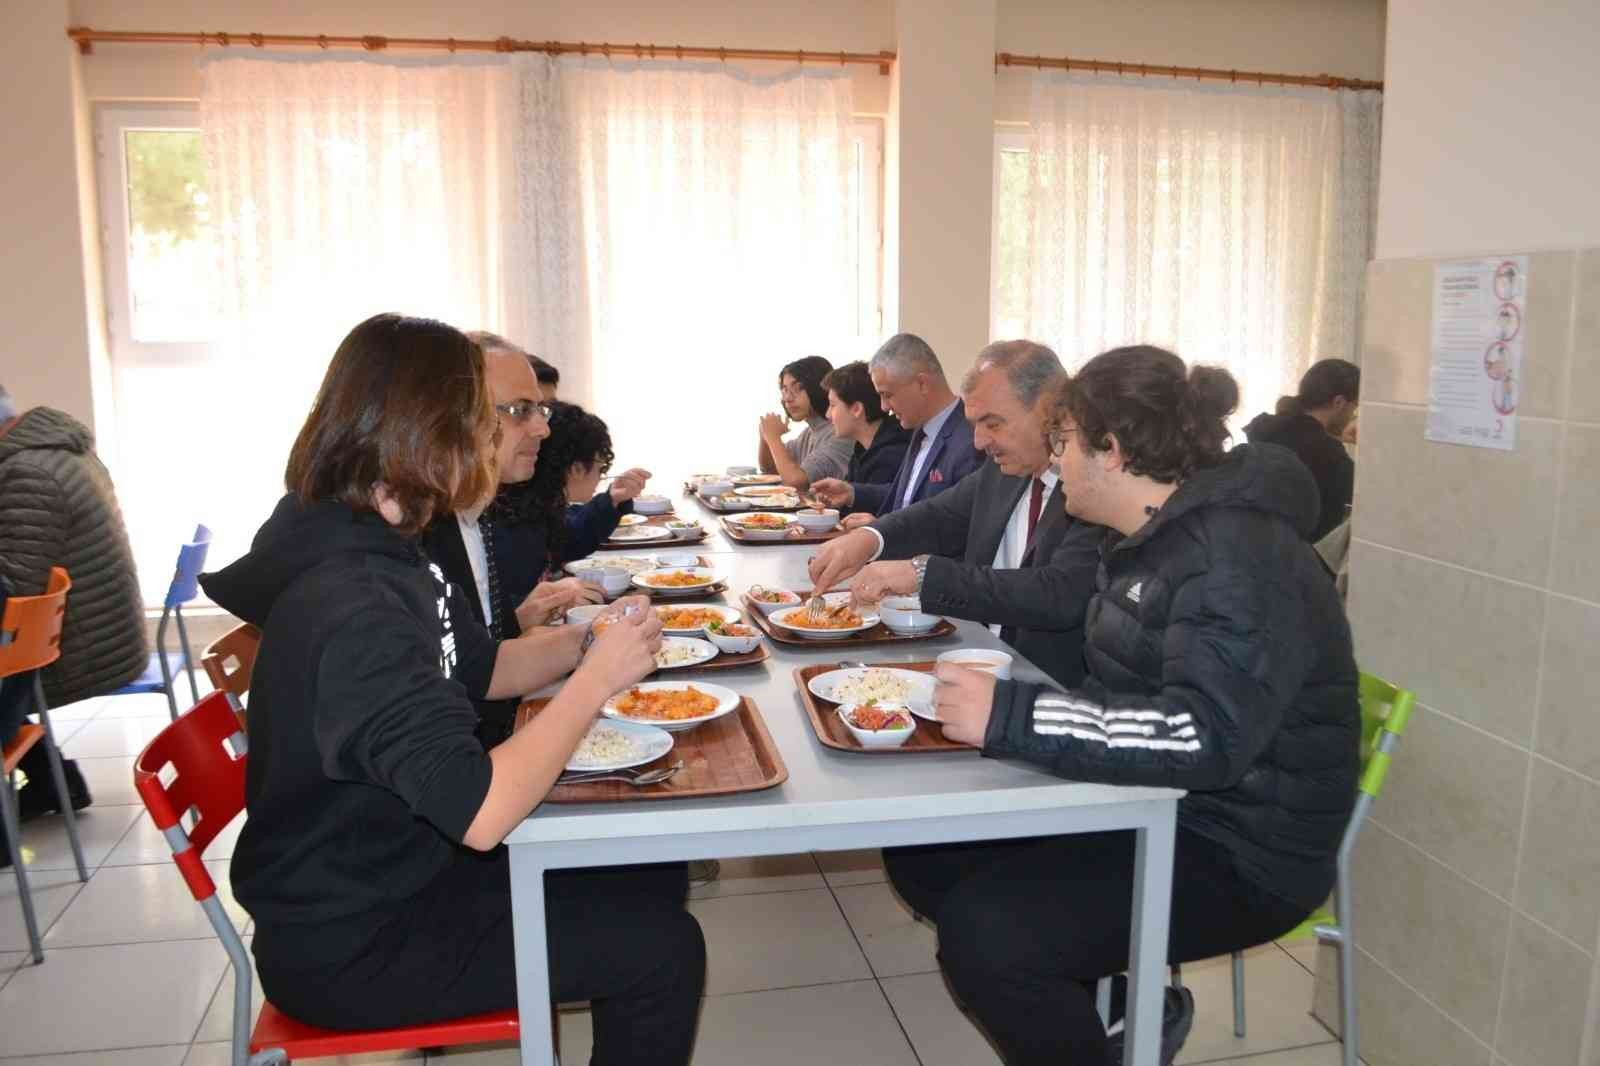 Aydın’da 2 bin 647 pansiyon öğrencisine kaliteli beslenme imkanı sunuluyor